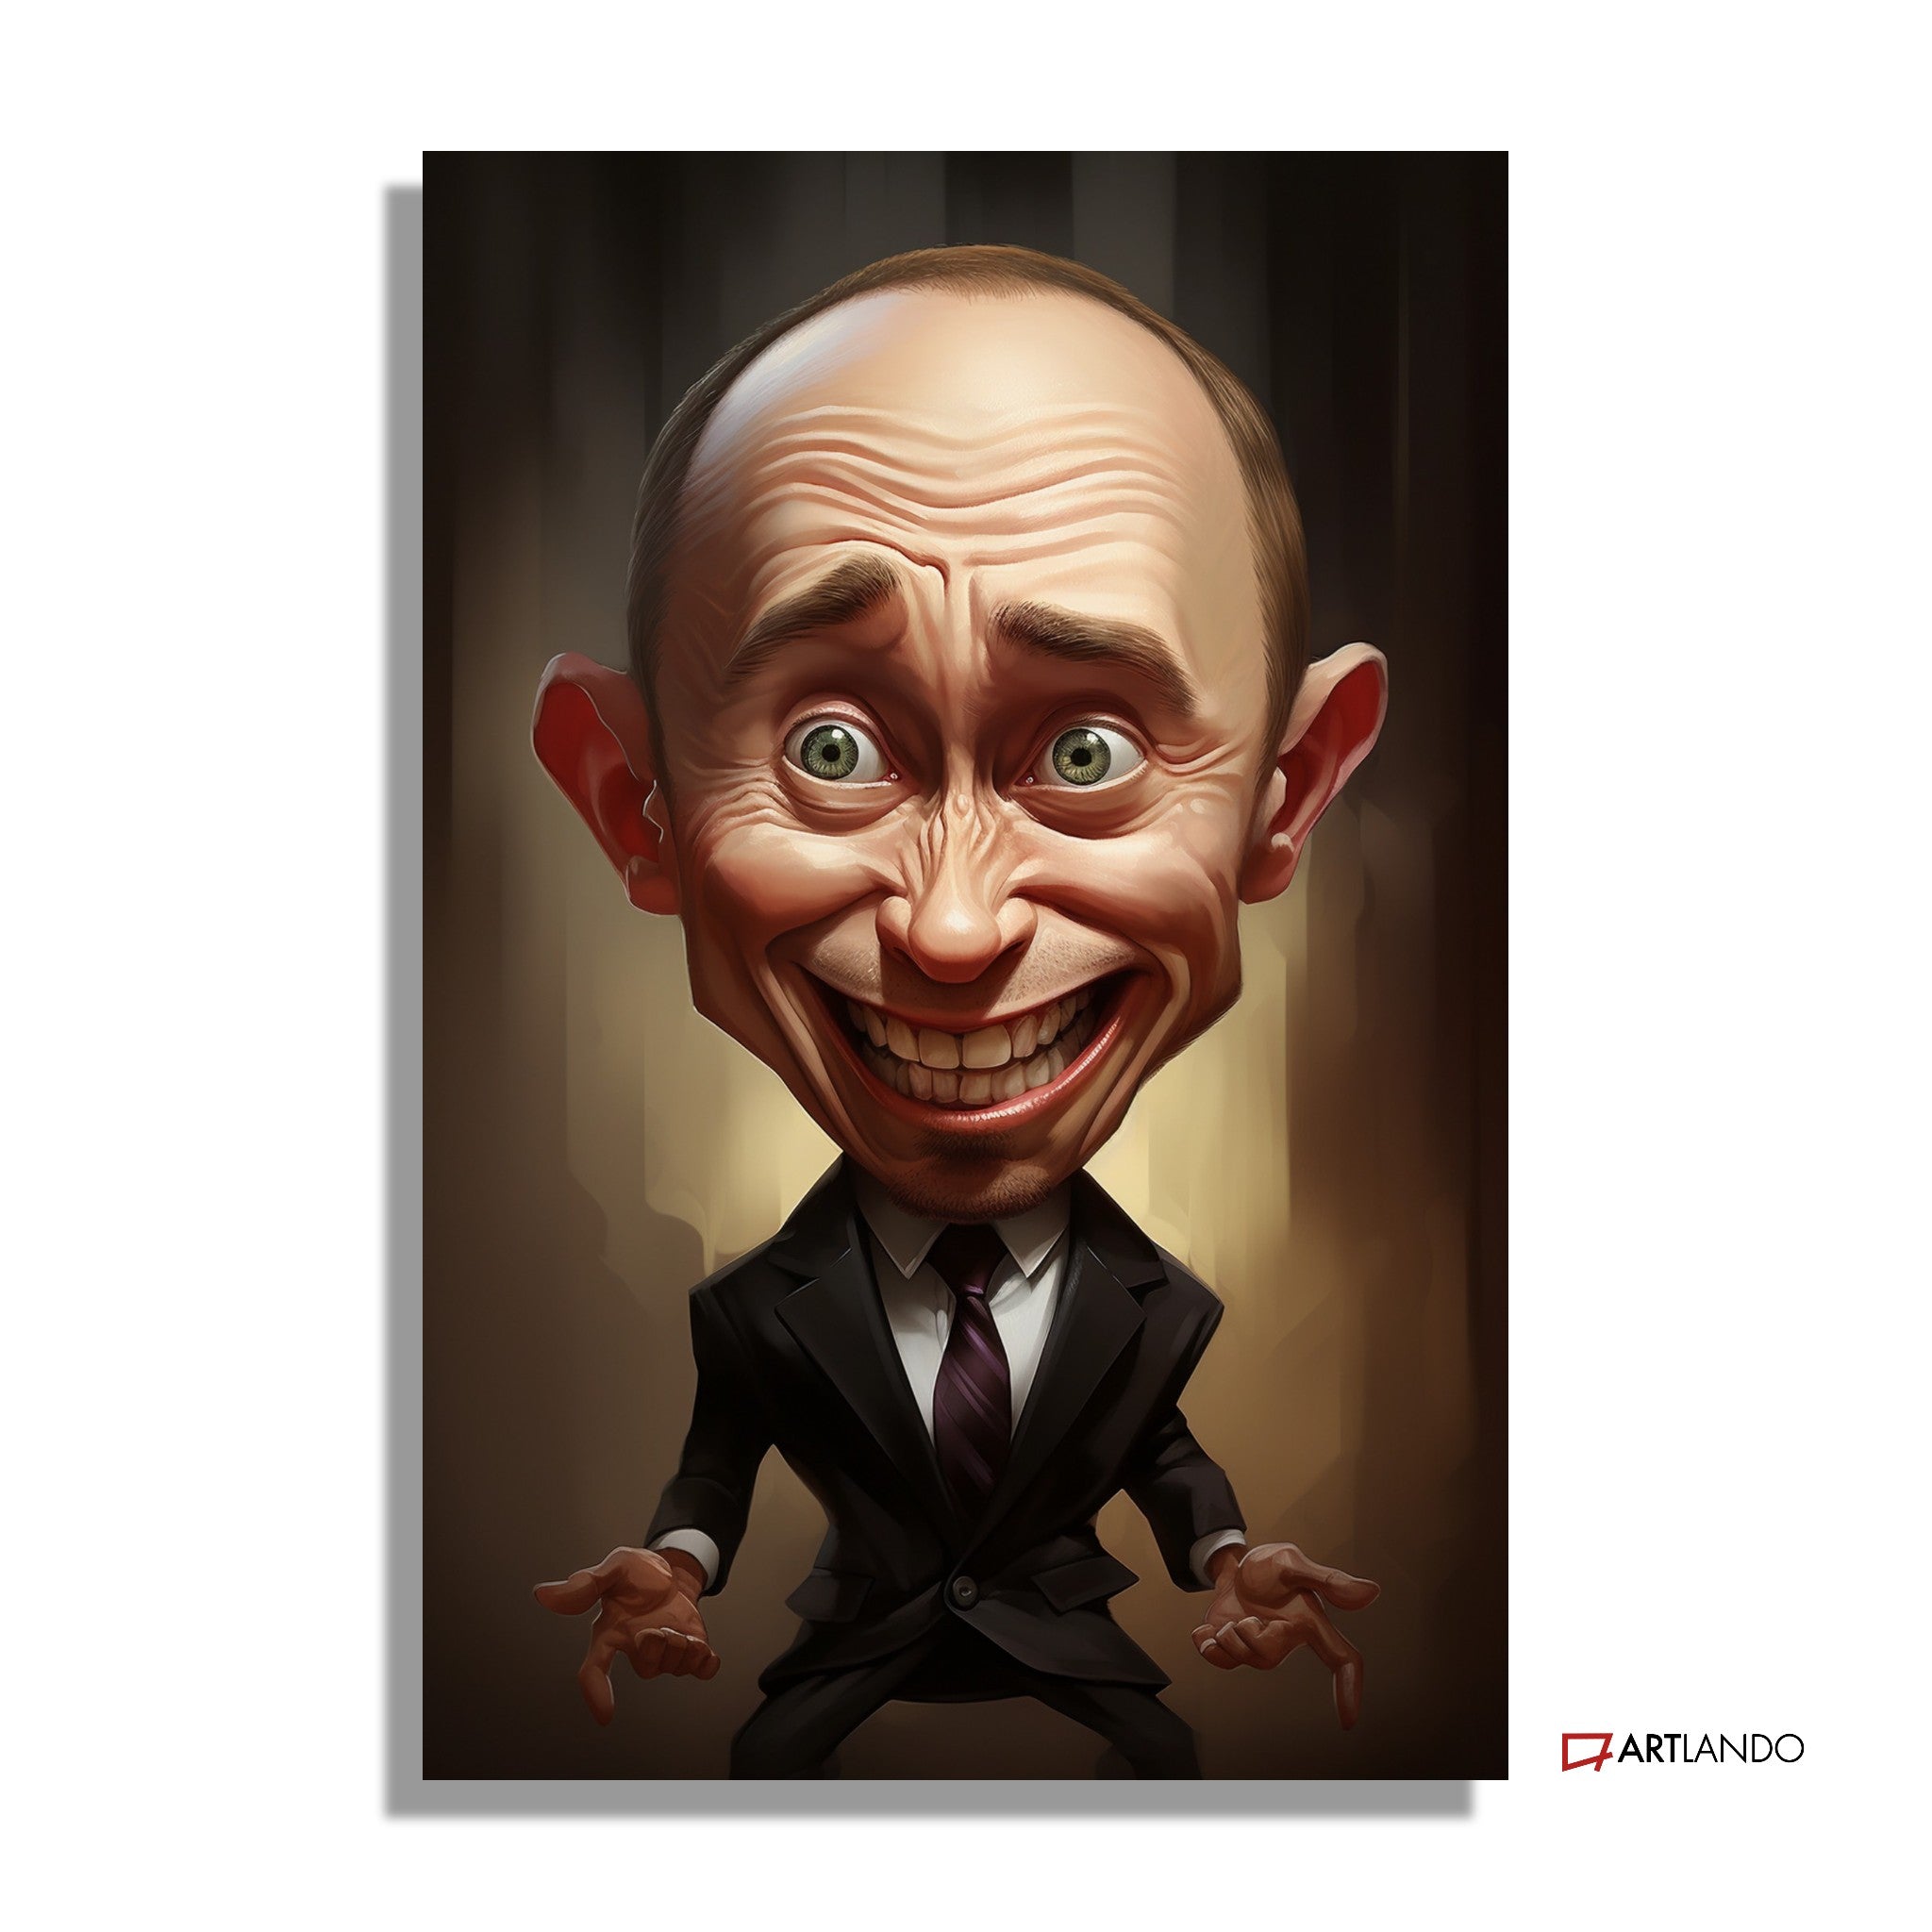 Überspitzte Karikatur von Vladimir Putin